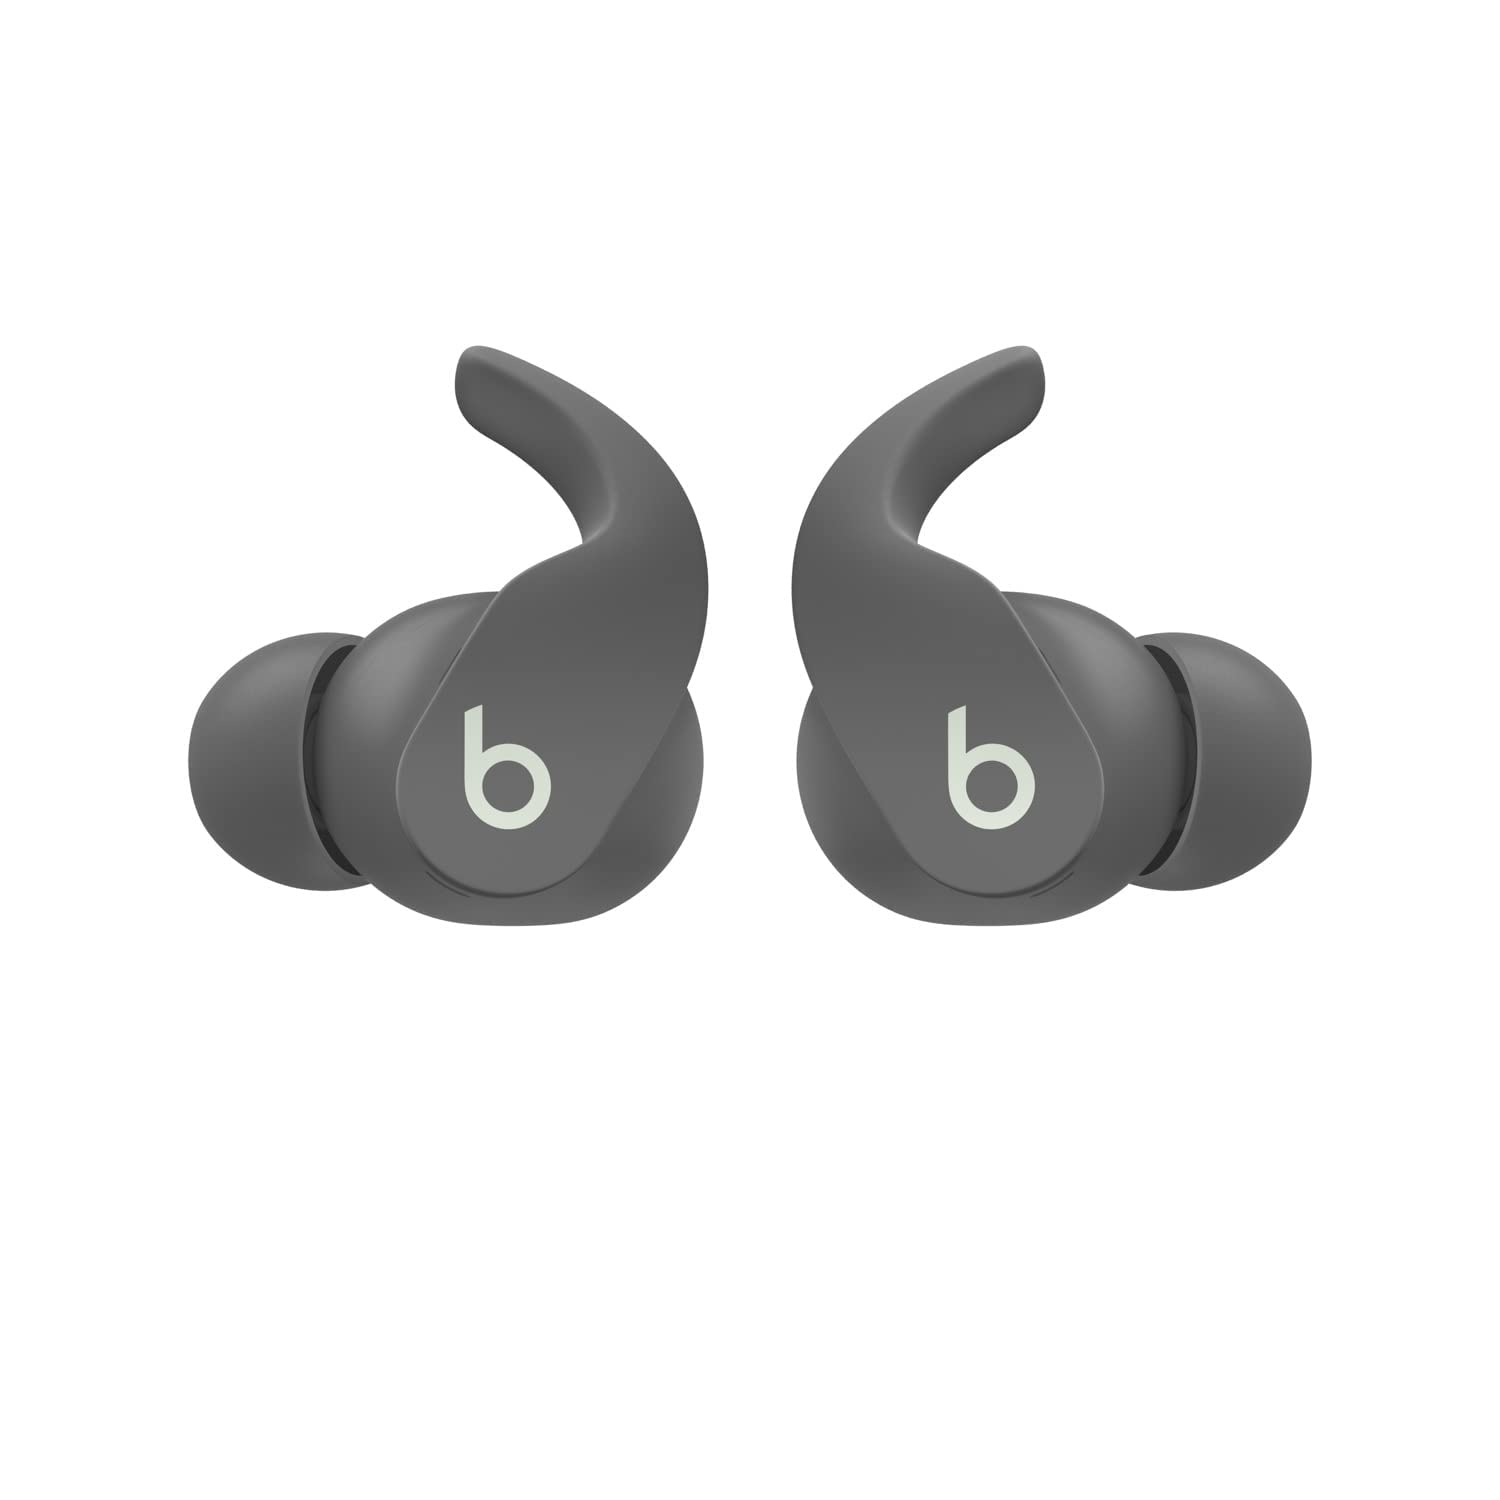 Beats by Dr. Dre -  Fit Pro True Wireless Noise Cancelling In-Ear Headphones - Sage Gray (Renewed)